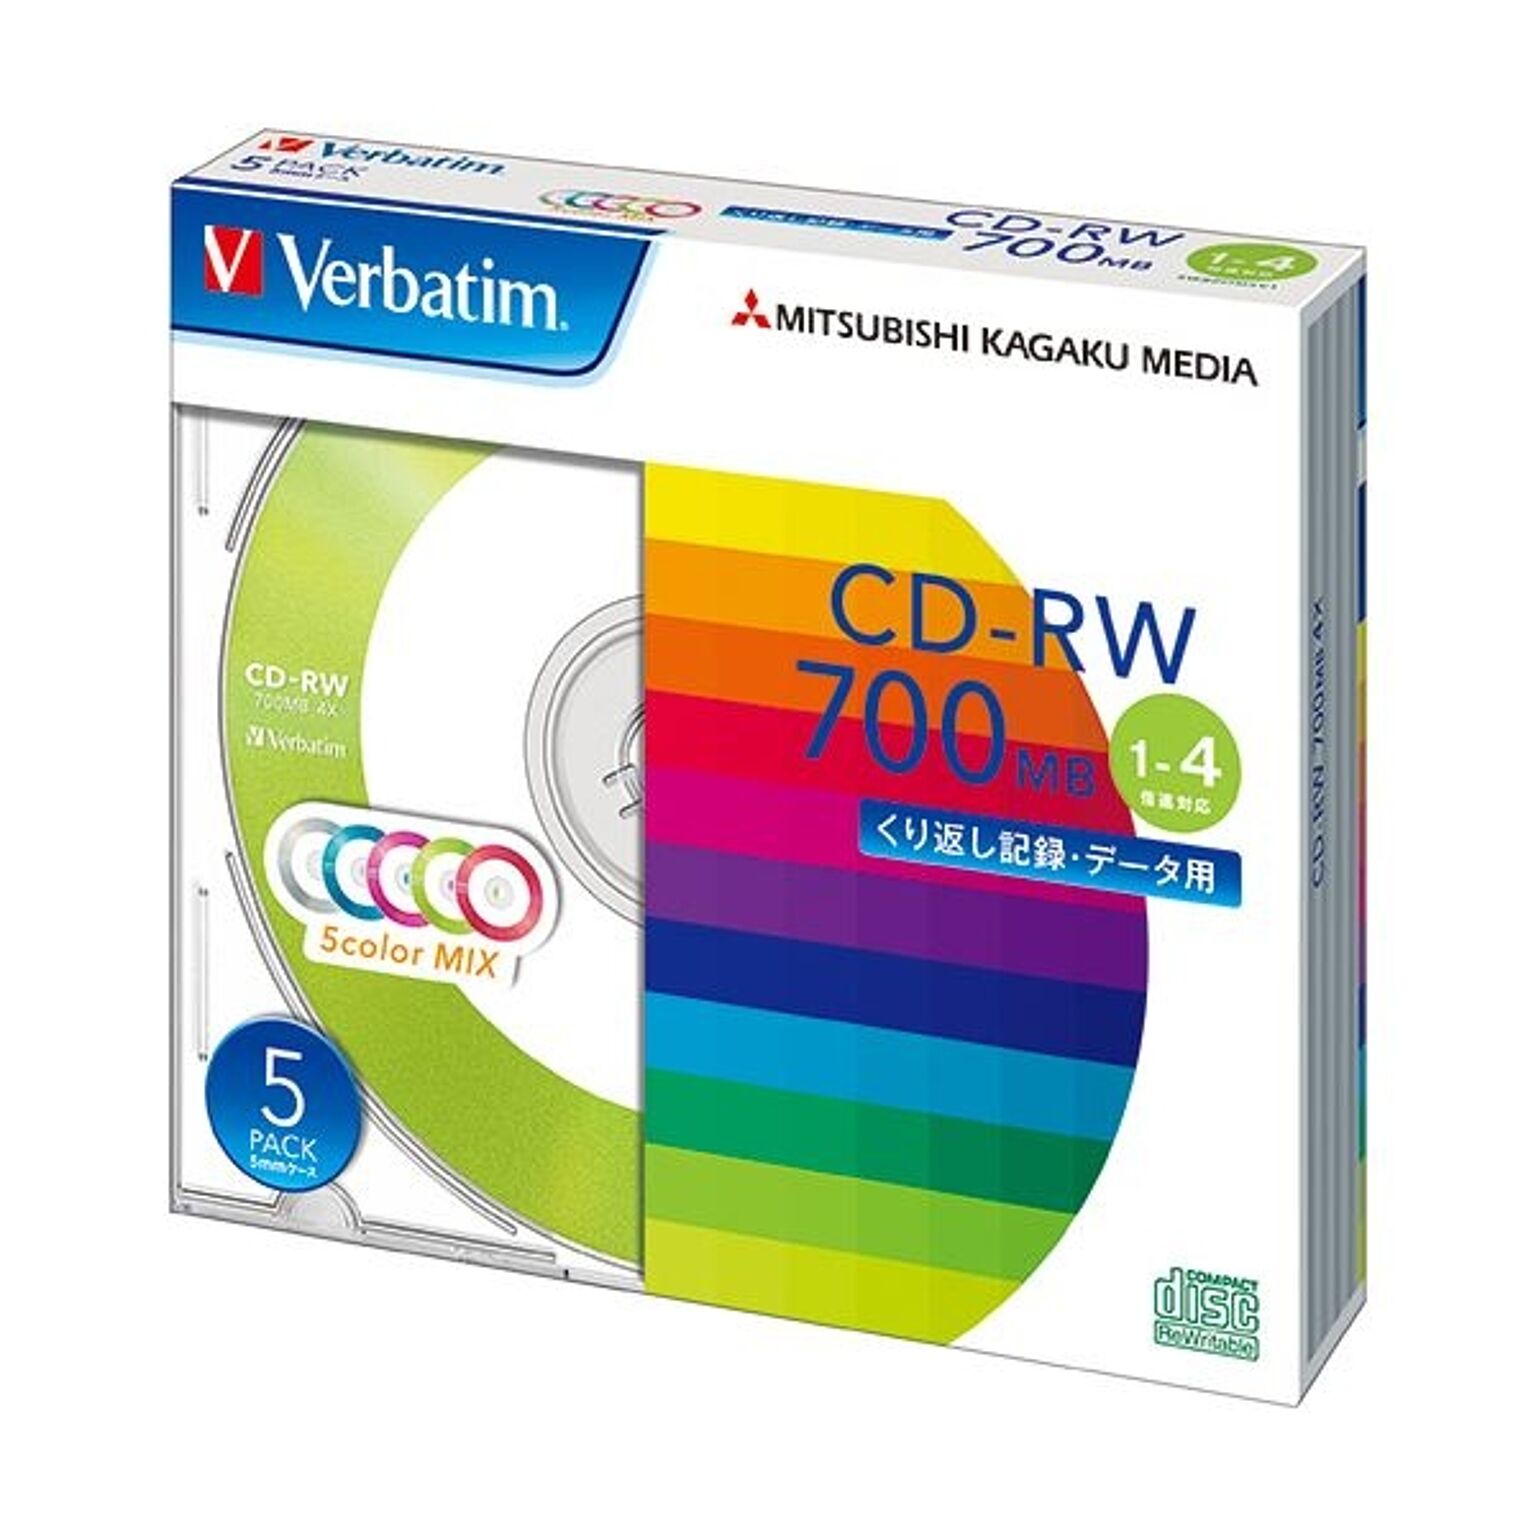 (まとめ) バーベイタム データ用CD-RW700MB 4倍速 5色カラーMIX 5mmスリムケース SW80QM5V1 1パック(5枚) 【×10セット】